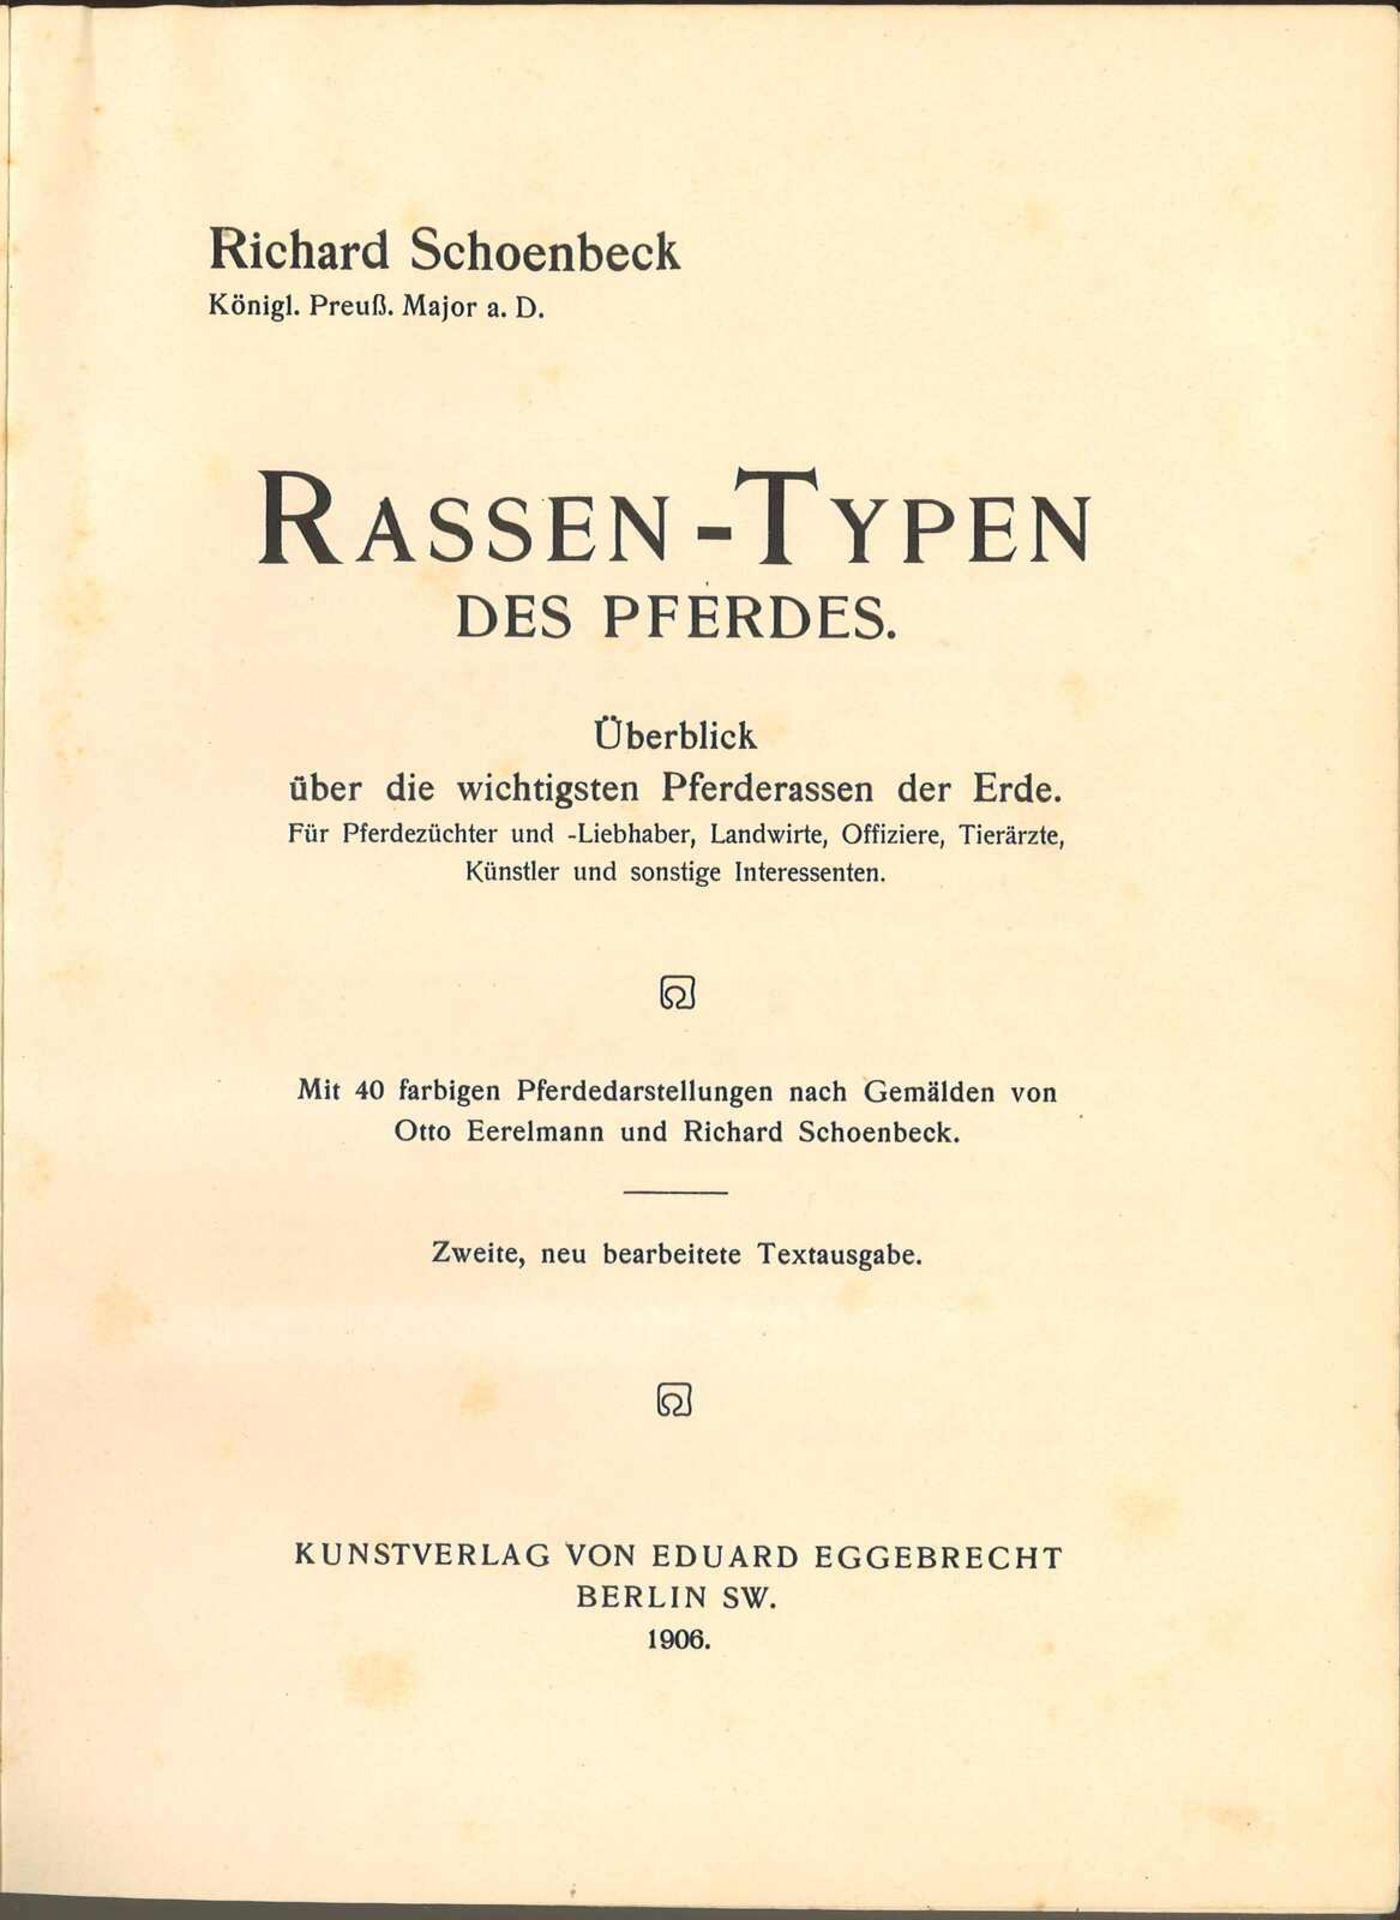 Rassen Typen des Pferdes, Richard Schoenbeck 1906, (Ausgabe ohne Pferdedarstellungen), seltene Ausg